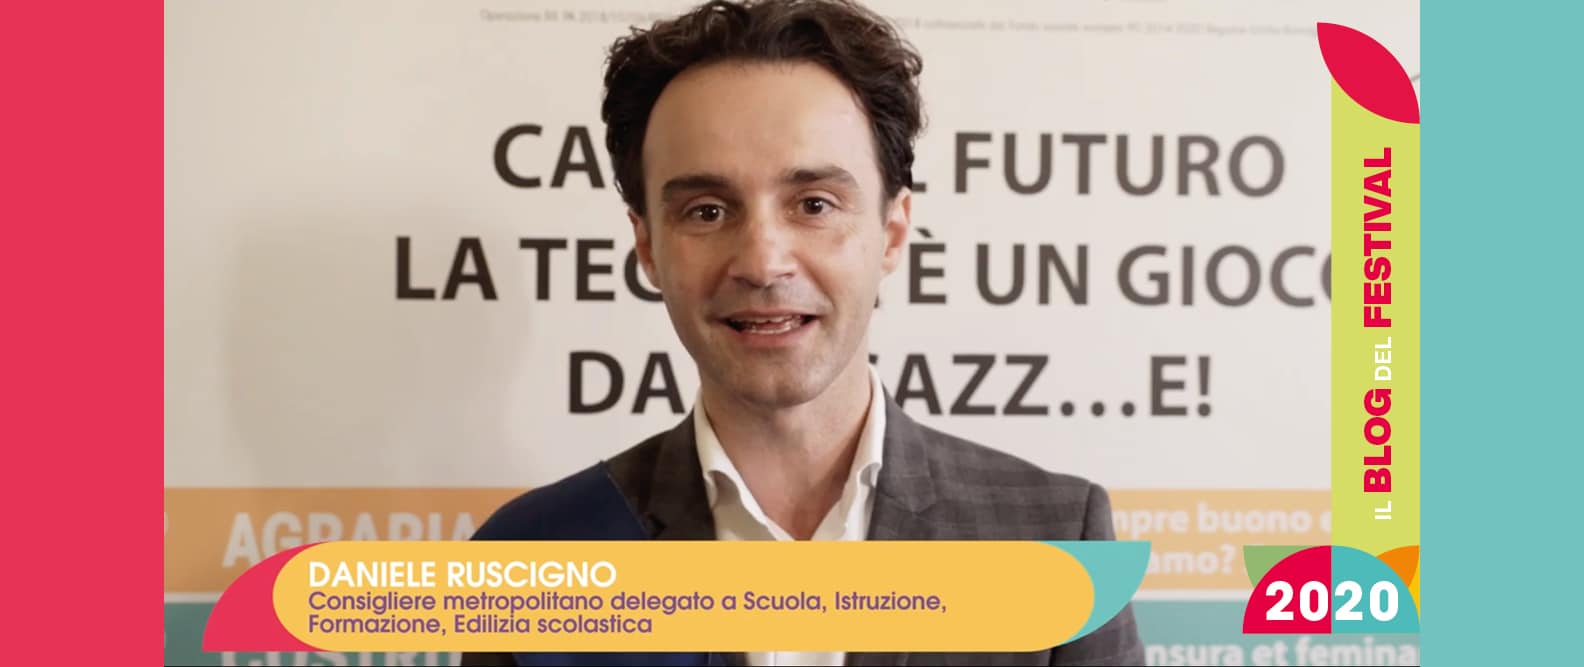 Il consigliere metropolitano Daniele Ruscigno racconta il Festival Cultura tecnica 2020